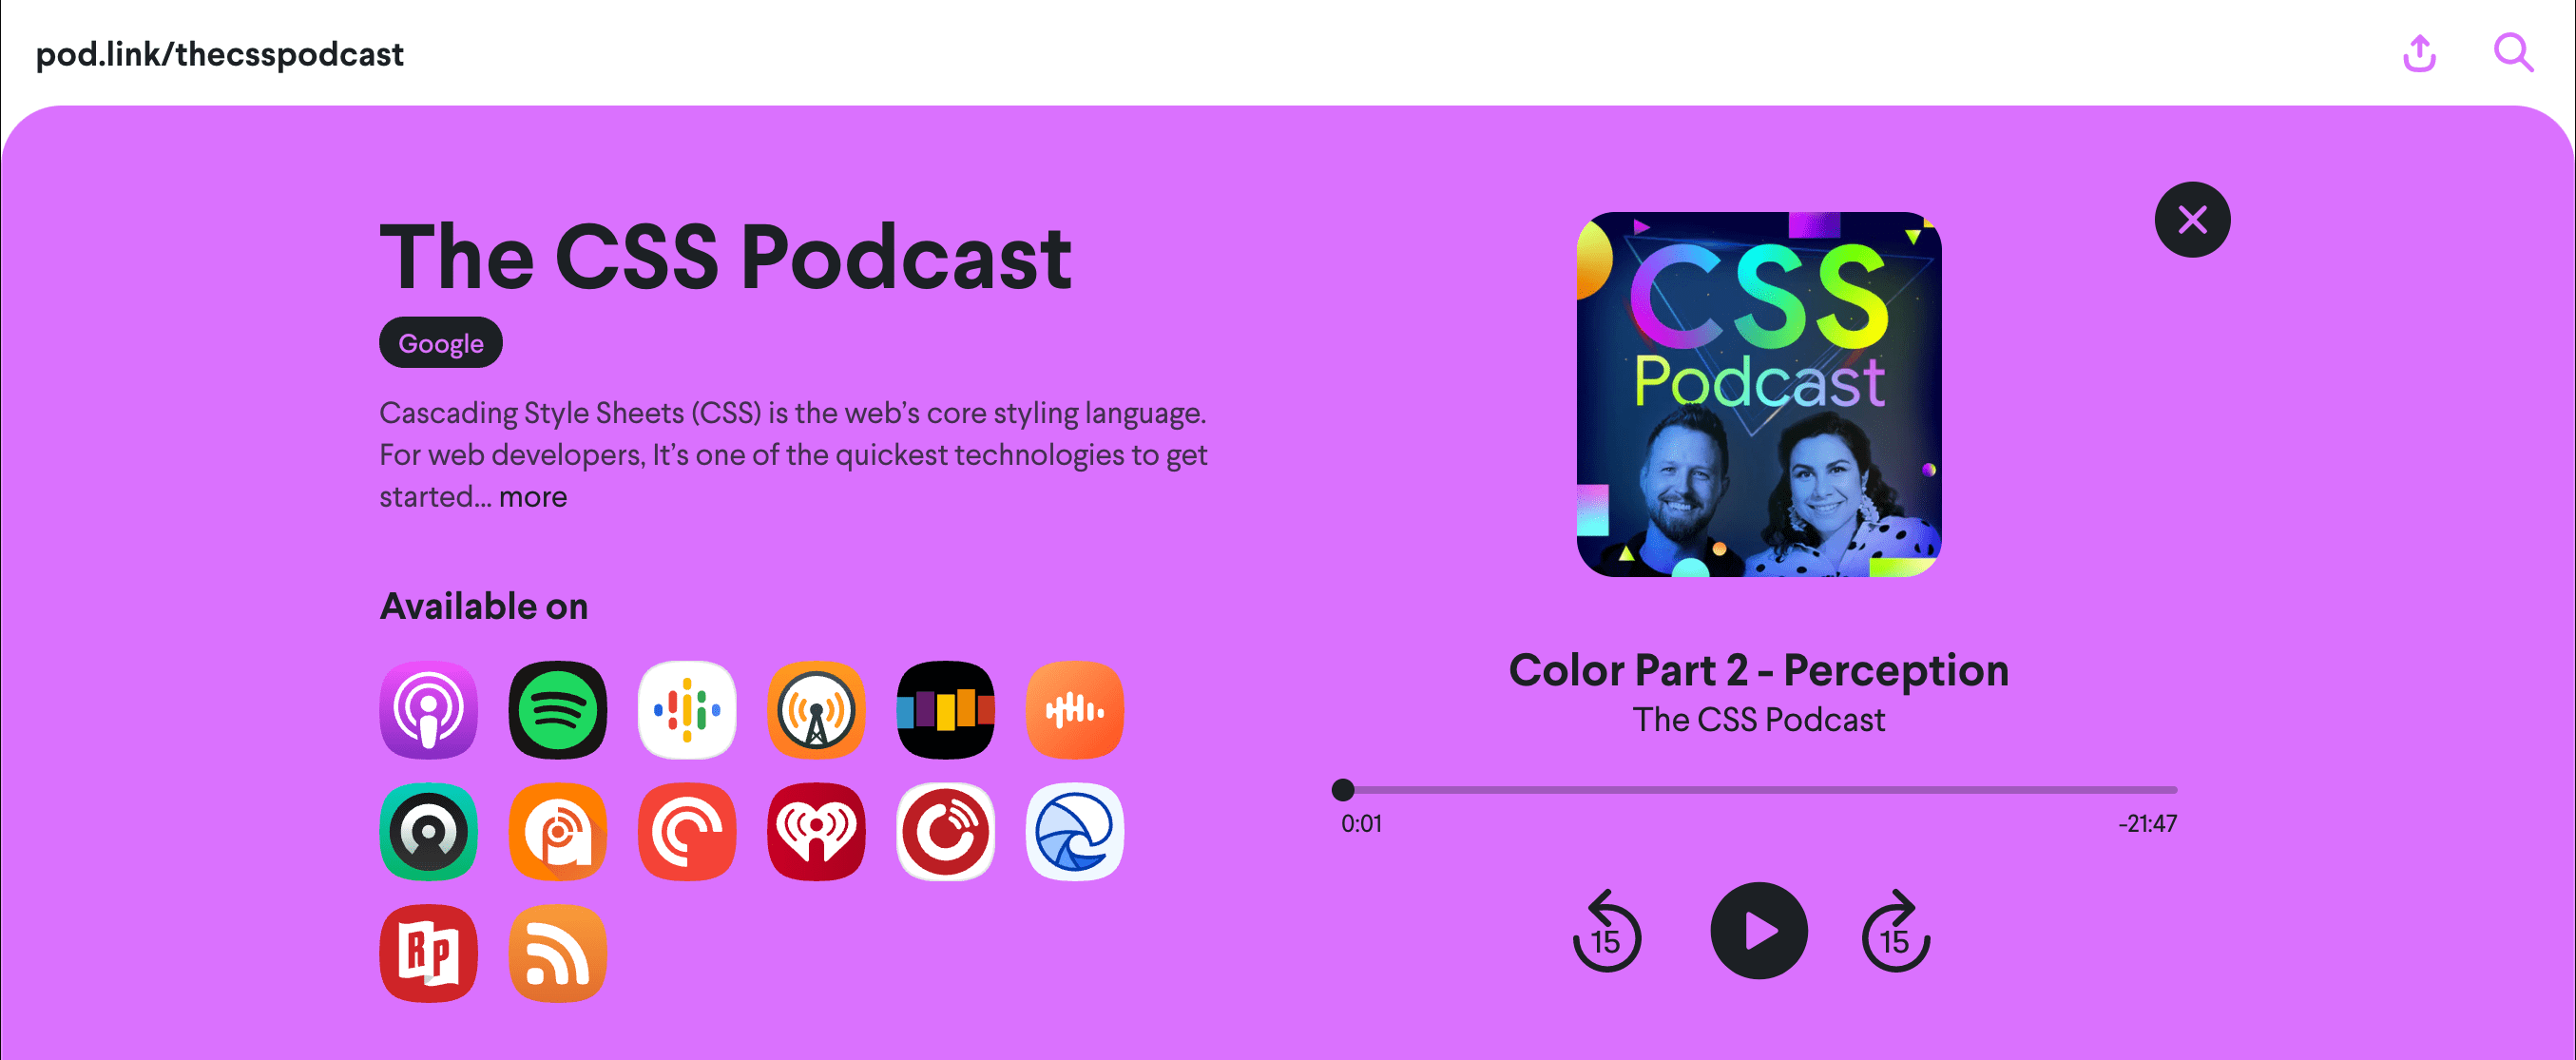 pod.link/csspodcast ウェブページのスクリーンショット。「Color 2: Perception」のエピソードが表示されている